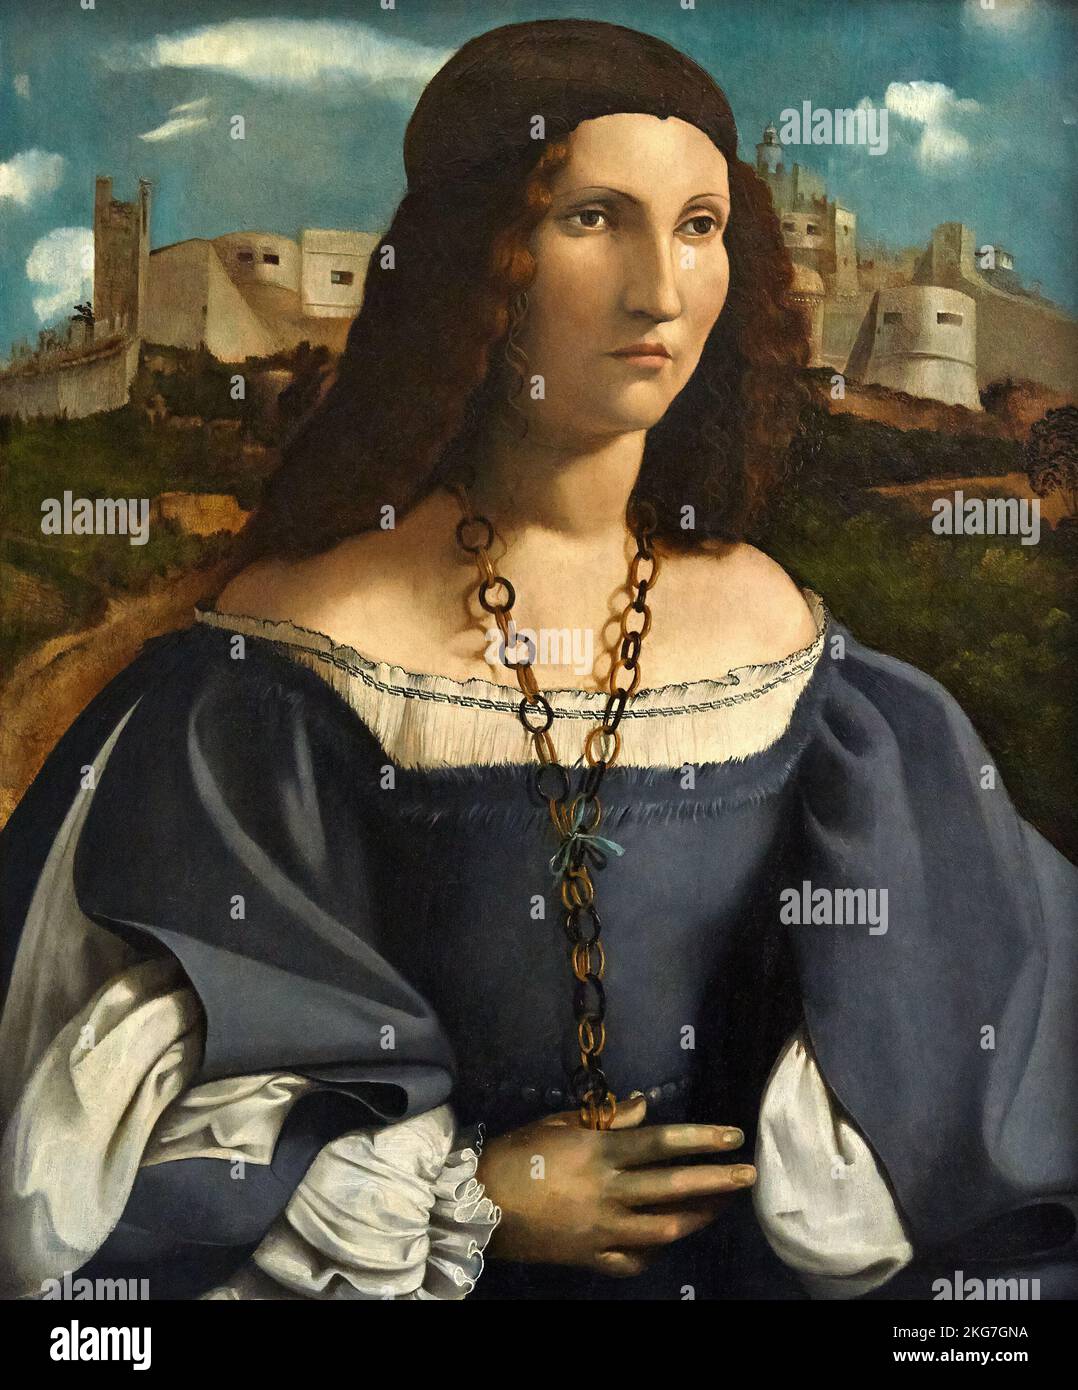 Ritratto di dama  - olio su tavola - Altobello Melone   - 1515 - Milano, Pinacoteca di Brera Stock Photo